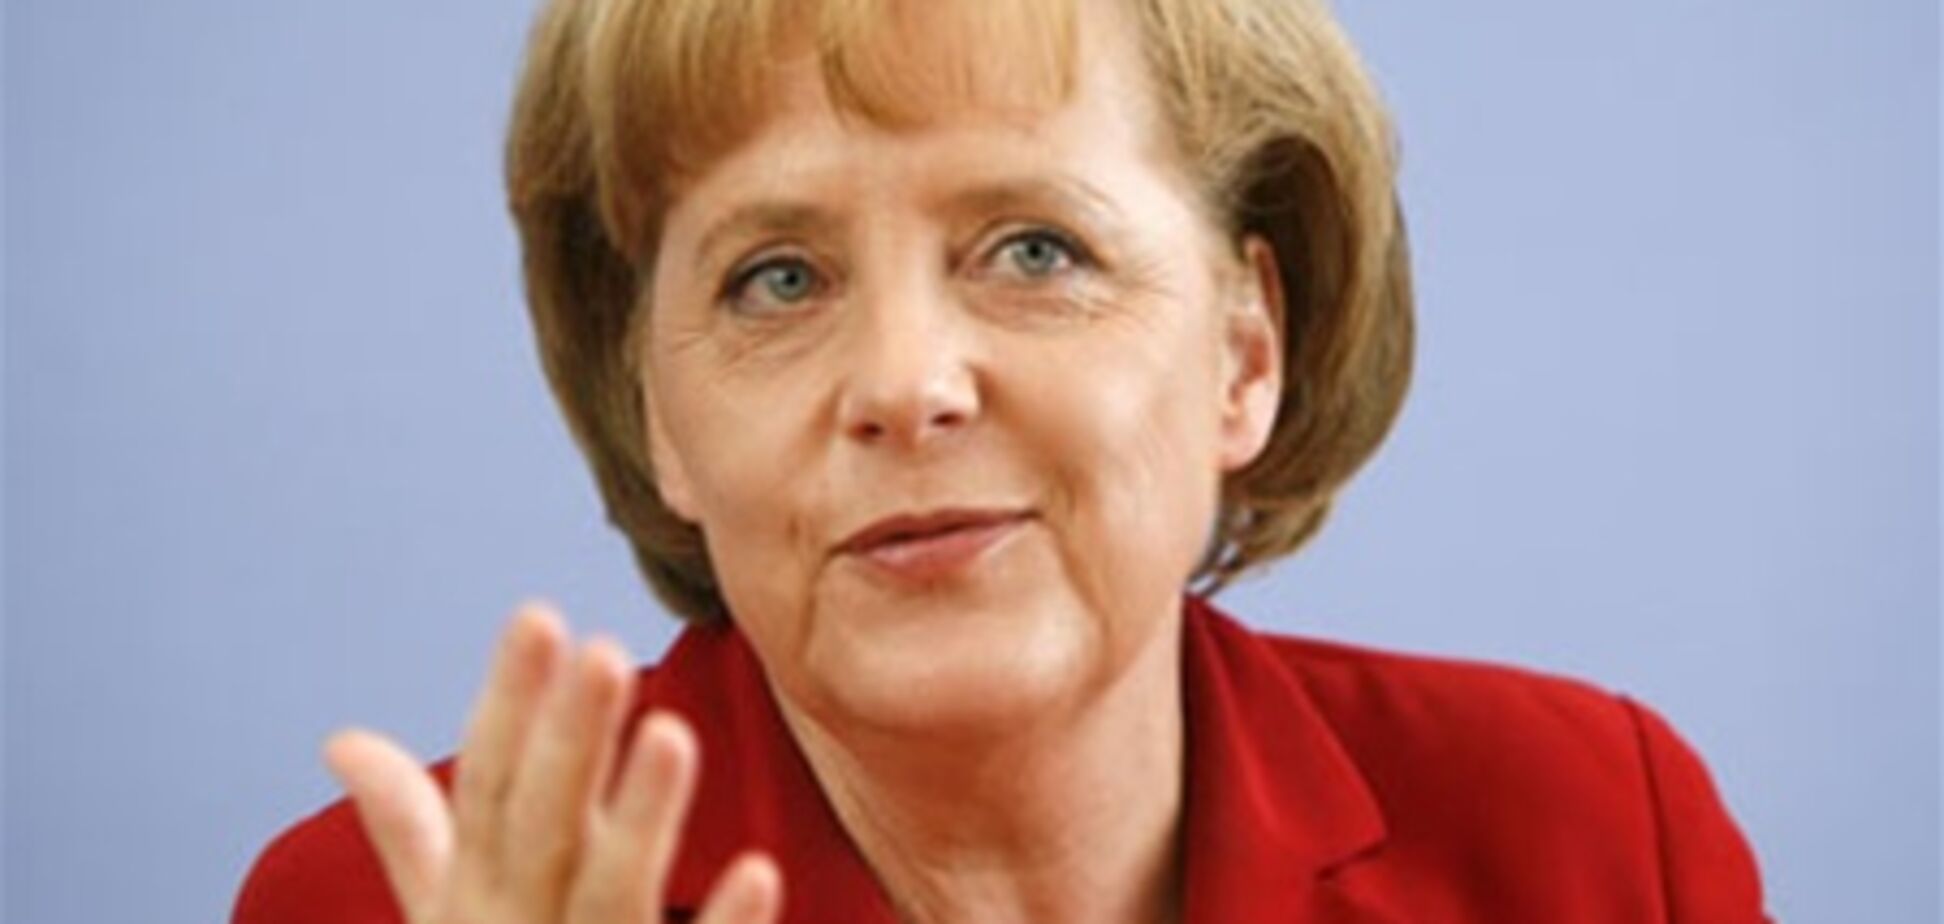 Меркель представила 'правительственную' предвыборную программу